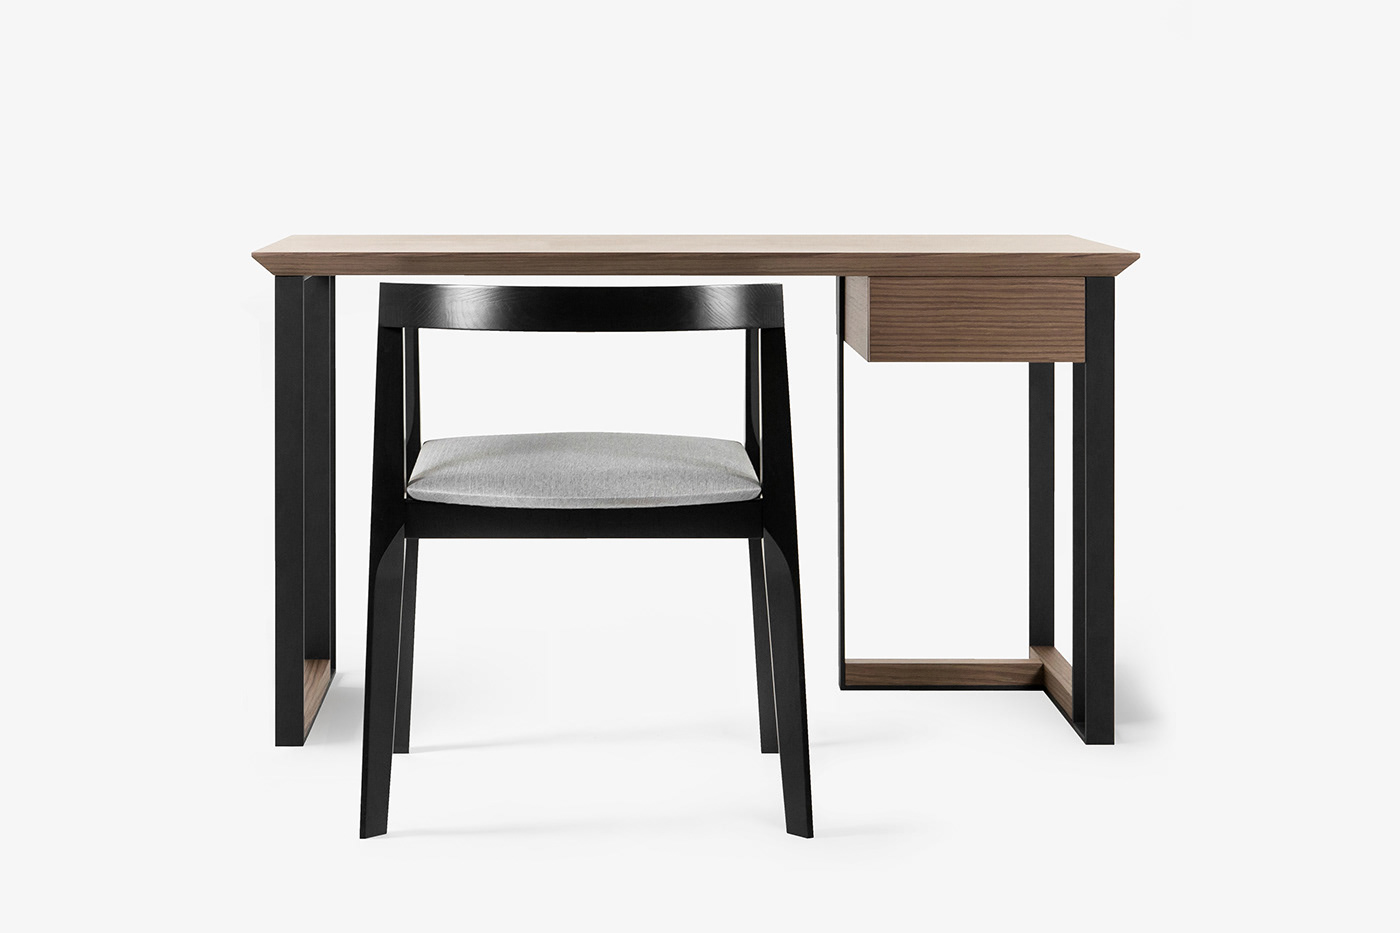 furniture for home furniture for office Design furniture desk for workplace table for workplace desktop product design 